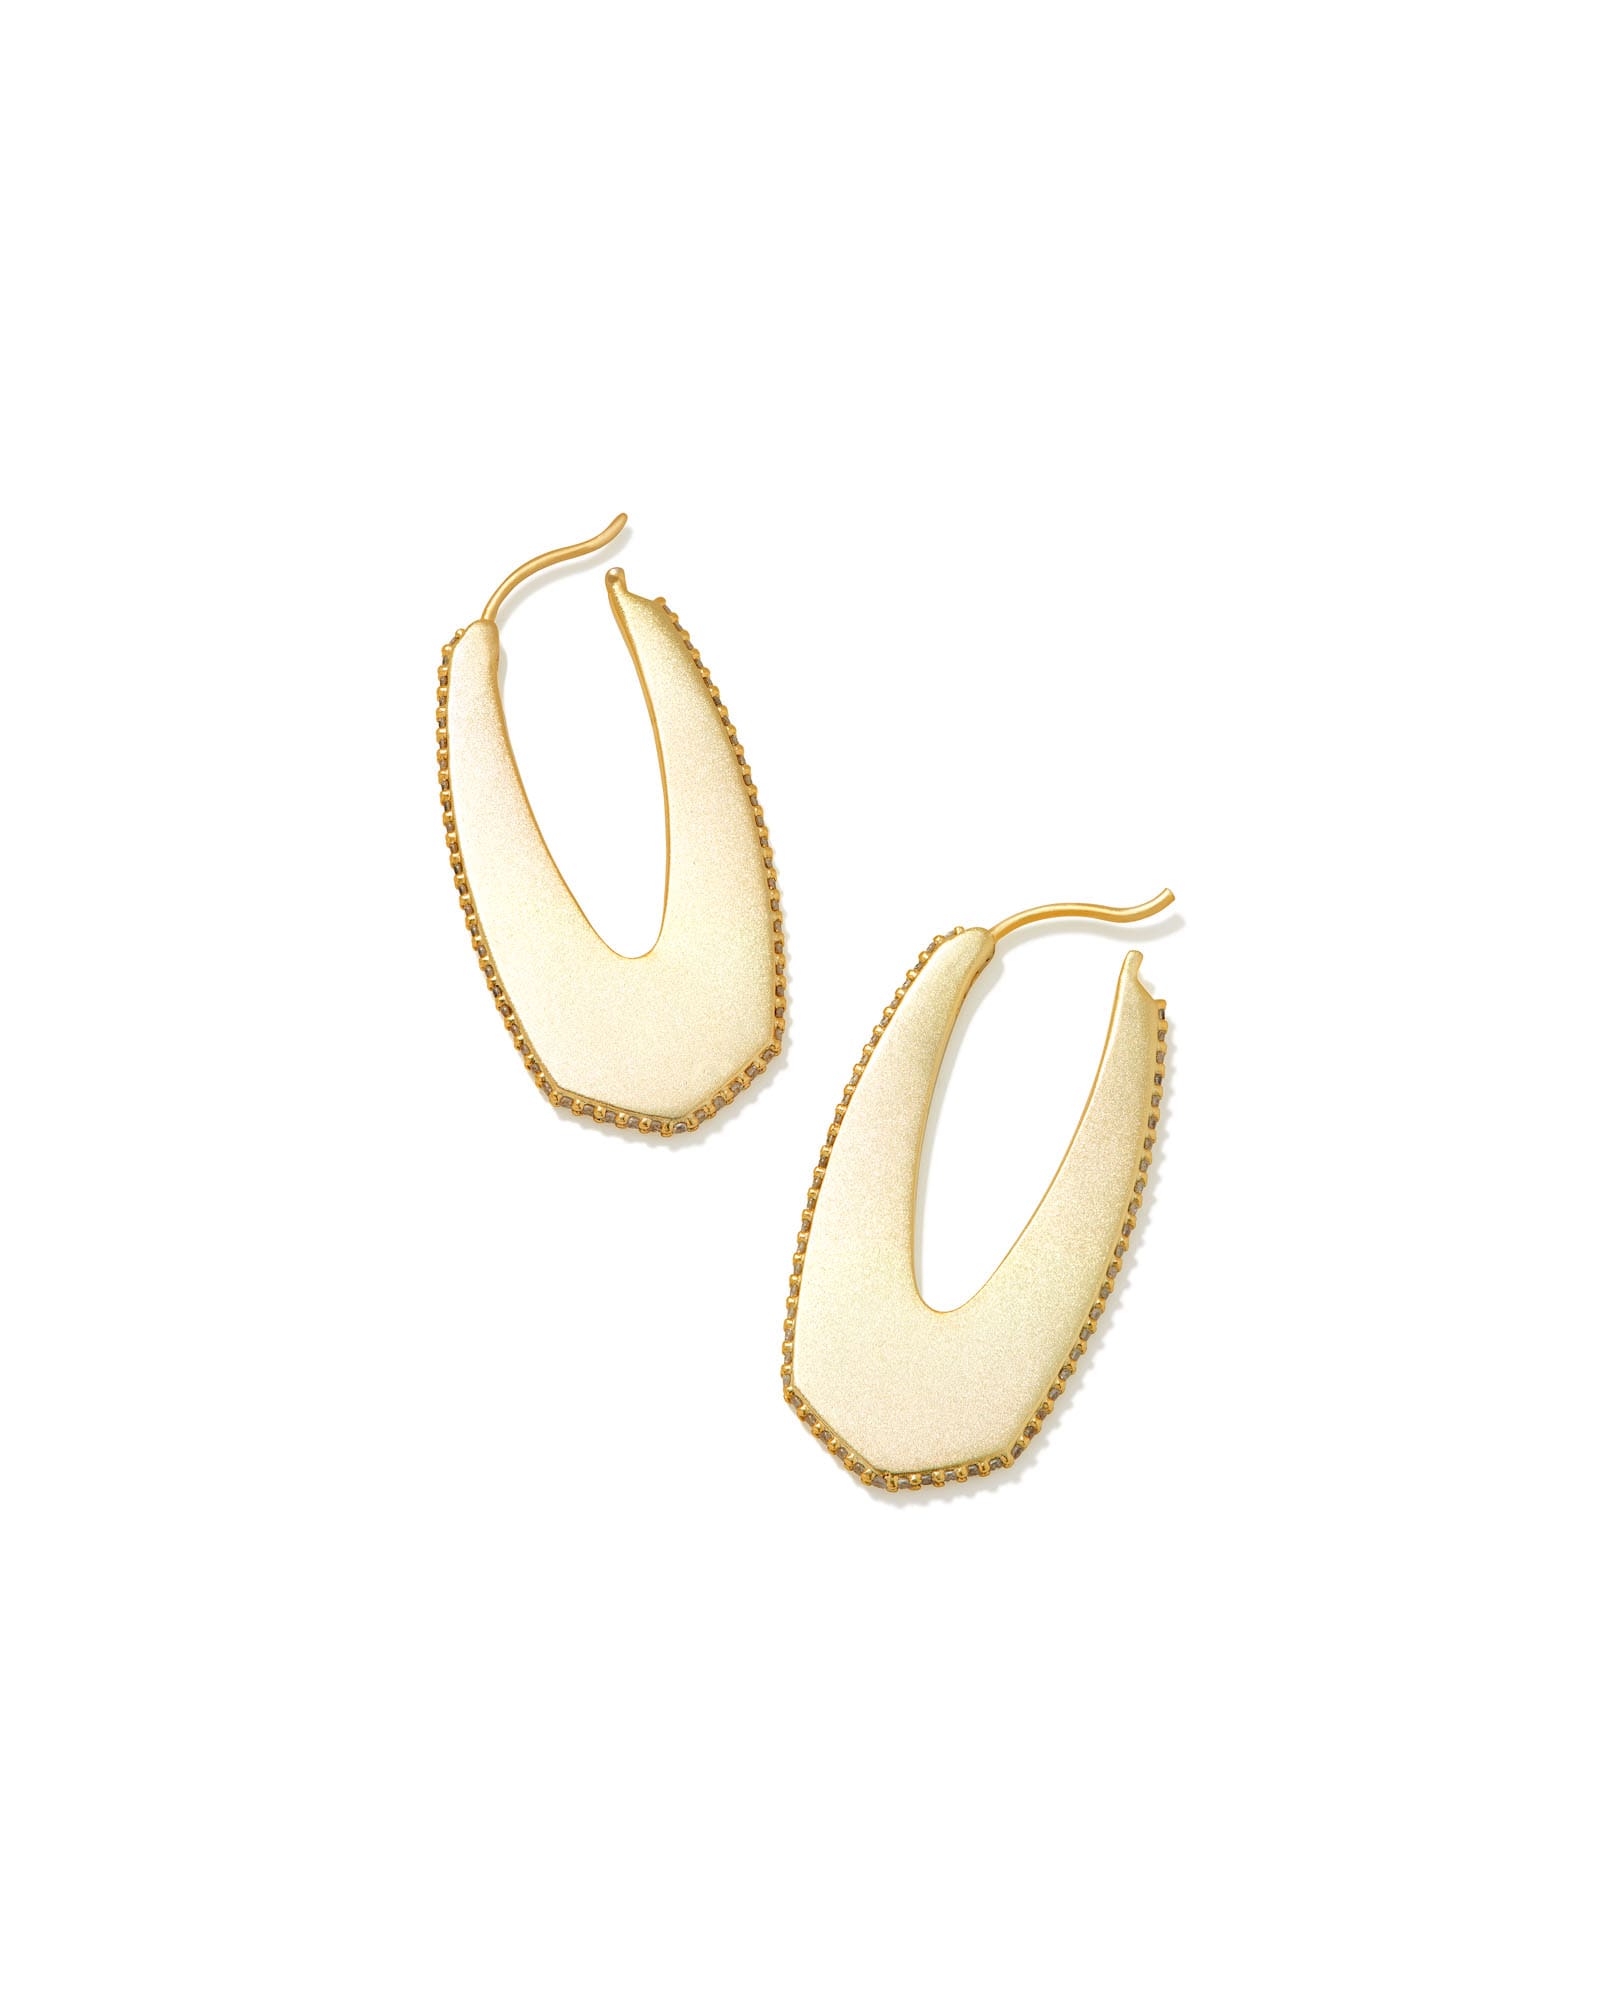 Kendra Scott Adeline Hoop Earrings in Gold | 14K Yellow Gold